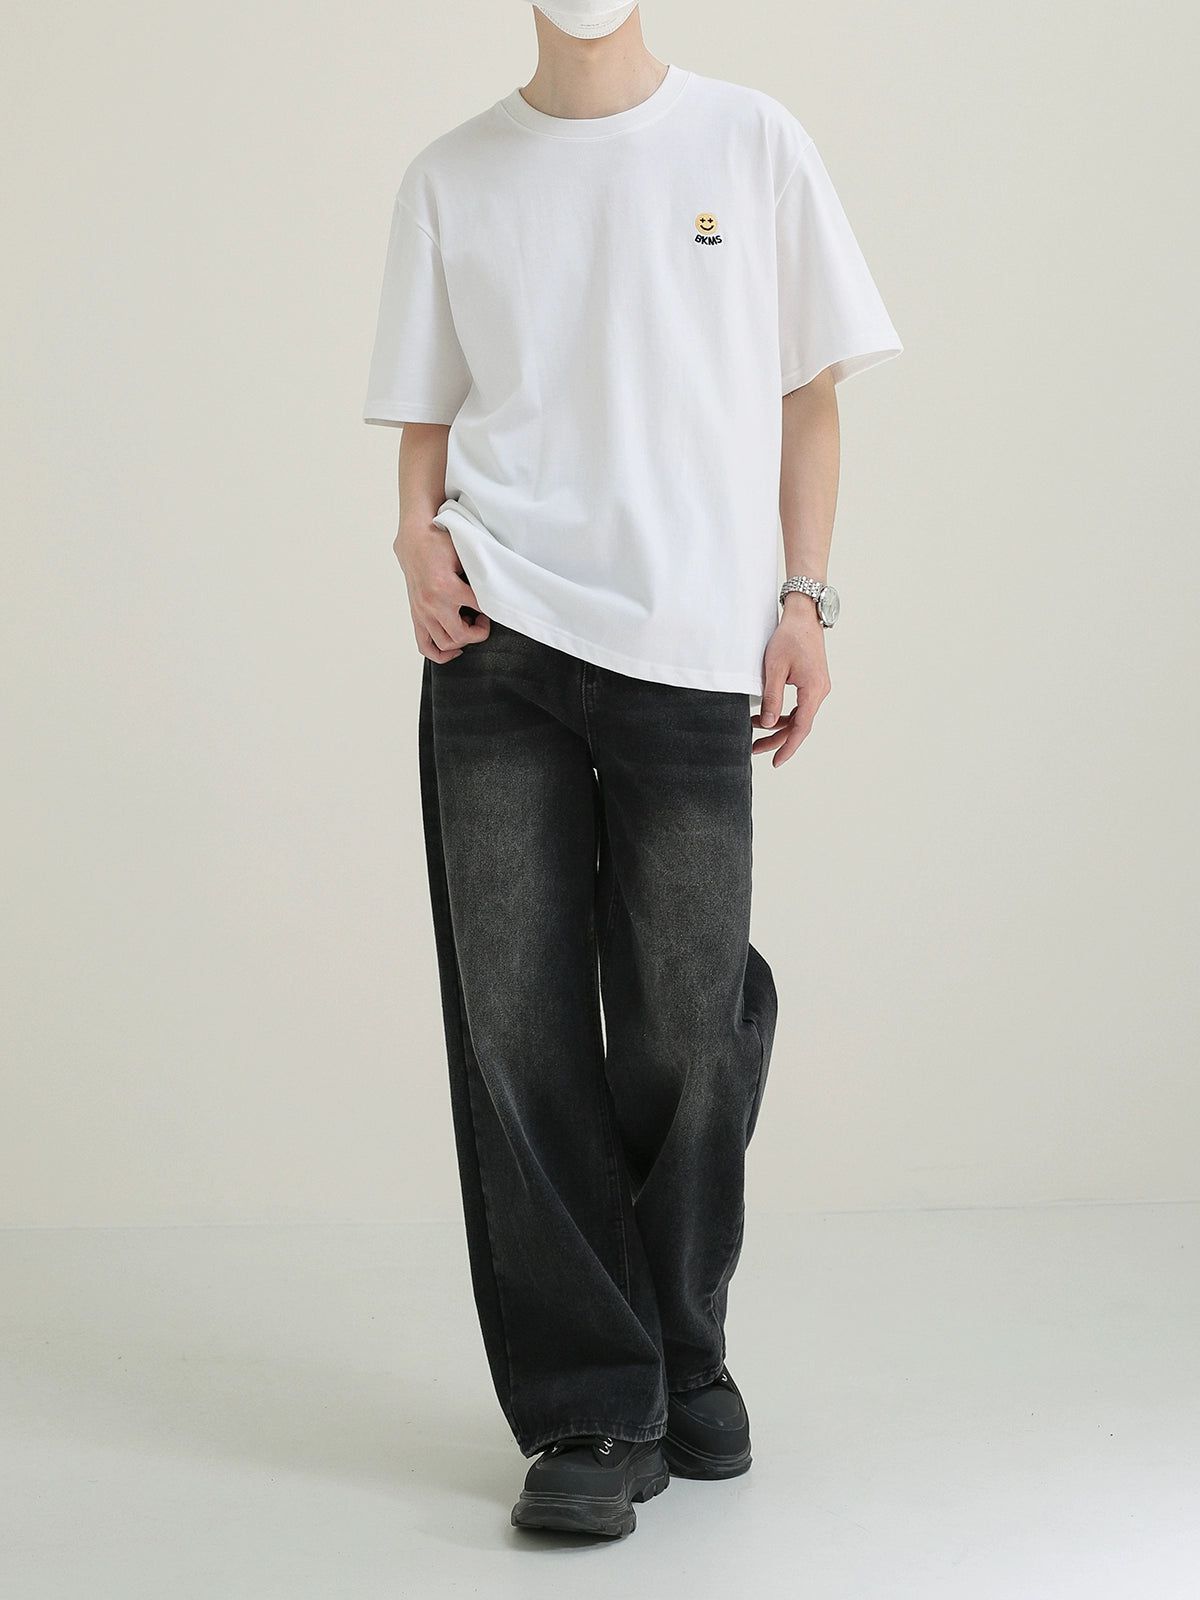 Zhou Smiley Face T-Shirt-korean-fashion-T-Shirt-Zhou's Closet-OH Garments